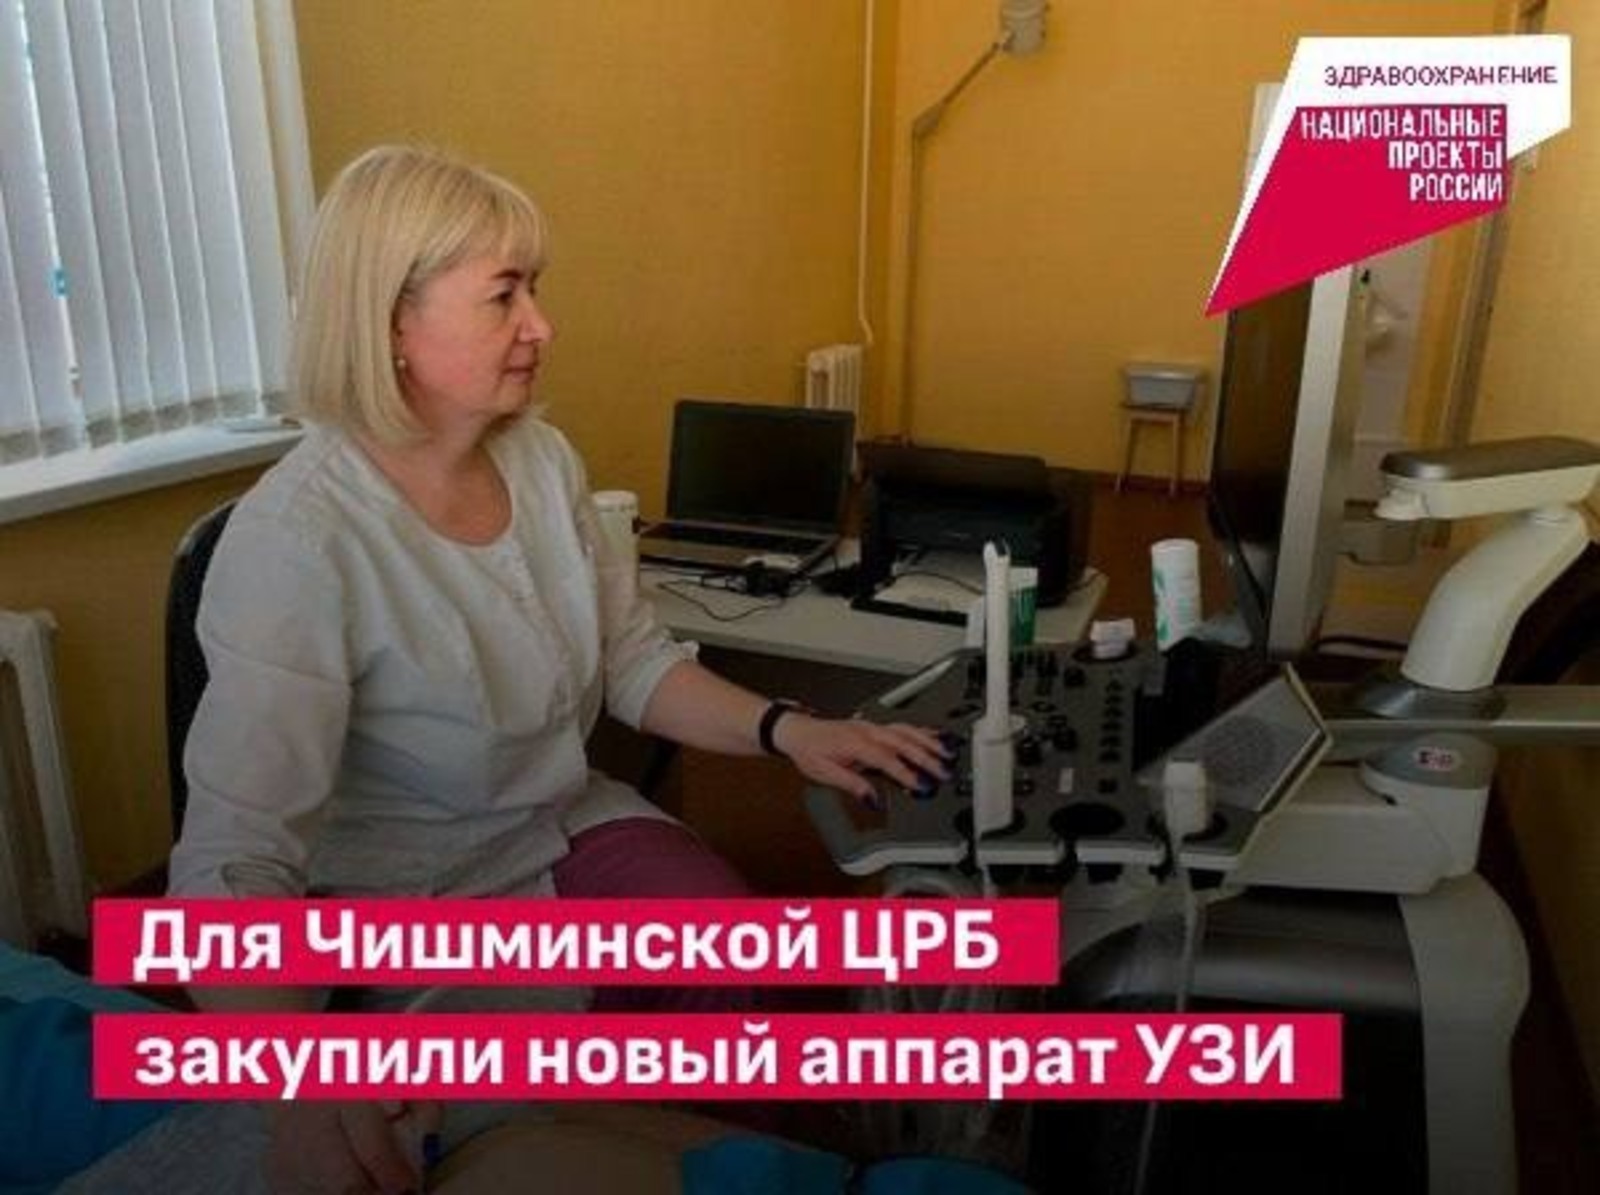 В Башкортостане по нацпроекту закупили аппарат УЗИ для райбольницы